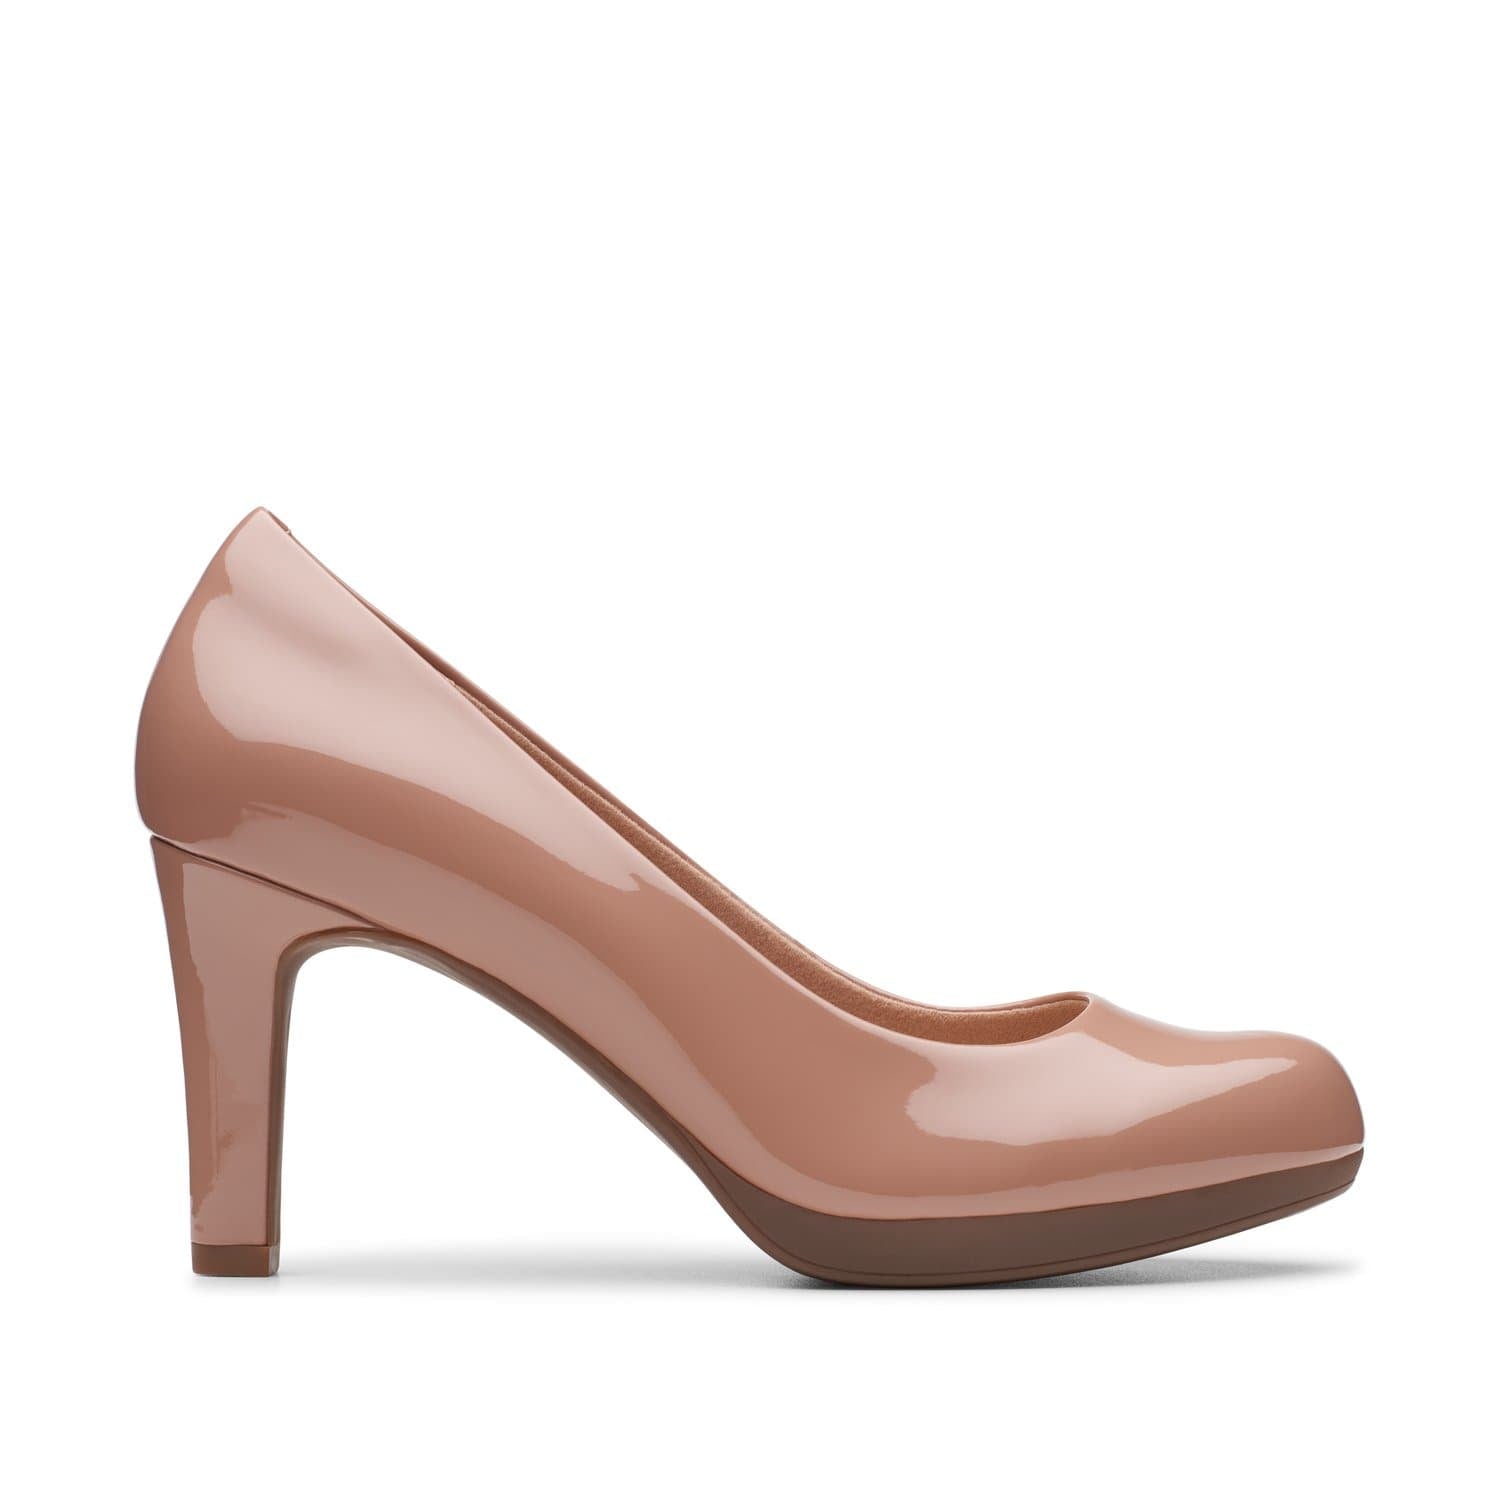 Clarks-Adriel-Viola-Women's-Shoes-Praline-Patent-26146726